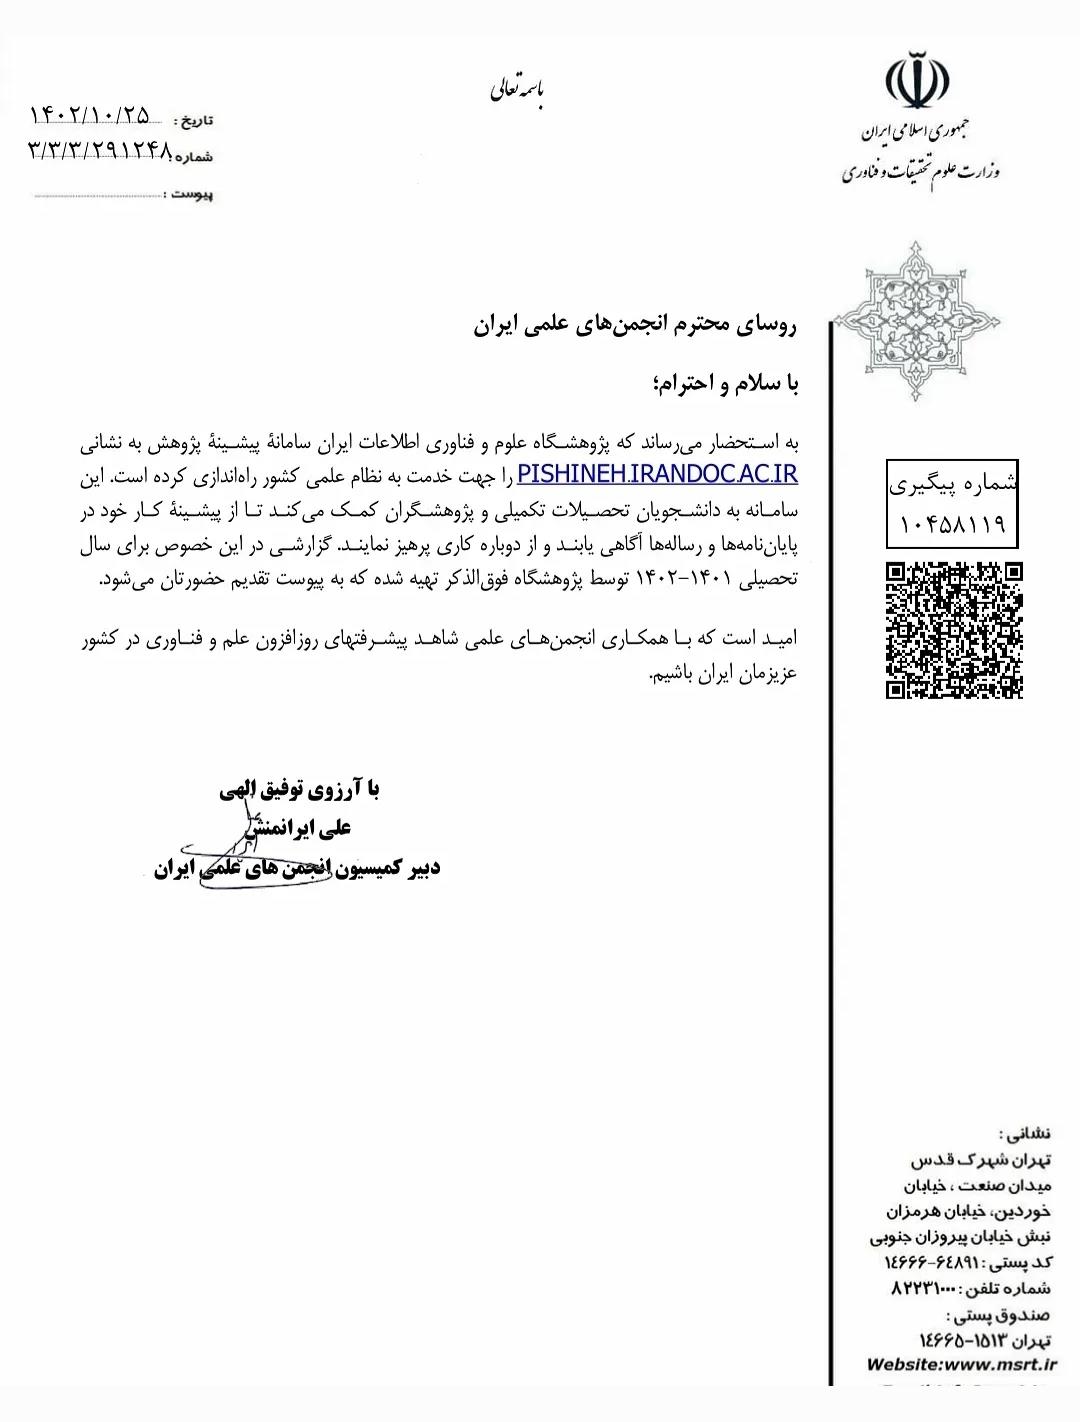 نامه دریافت شده از سوی محترم کمیسیون انجمن‌های علمی ایران جهت تشکیل سایت پیشینه پژوهش 